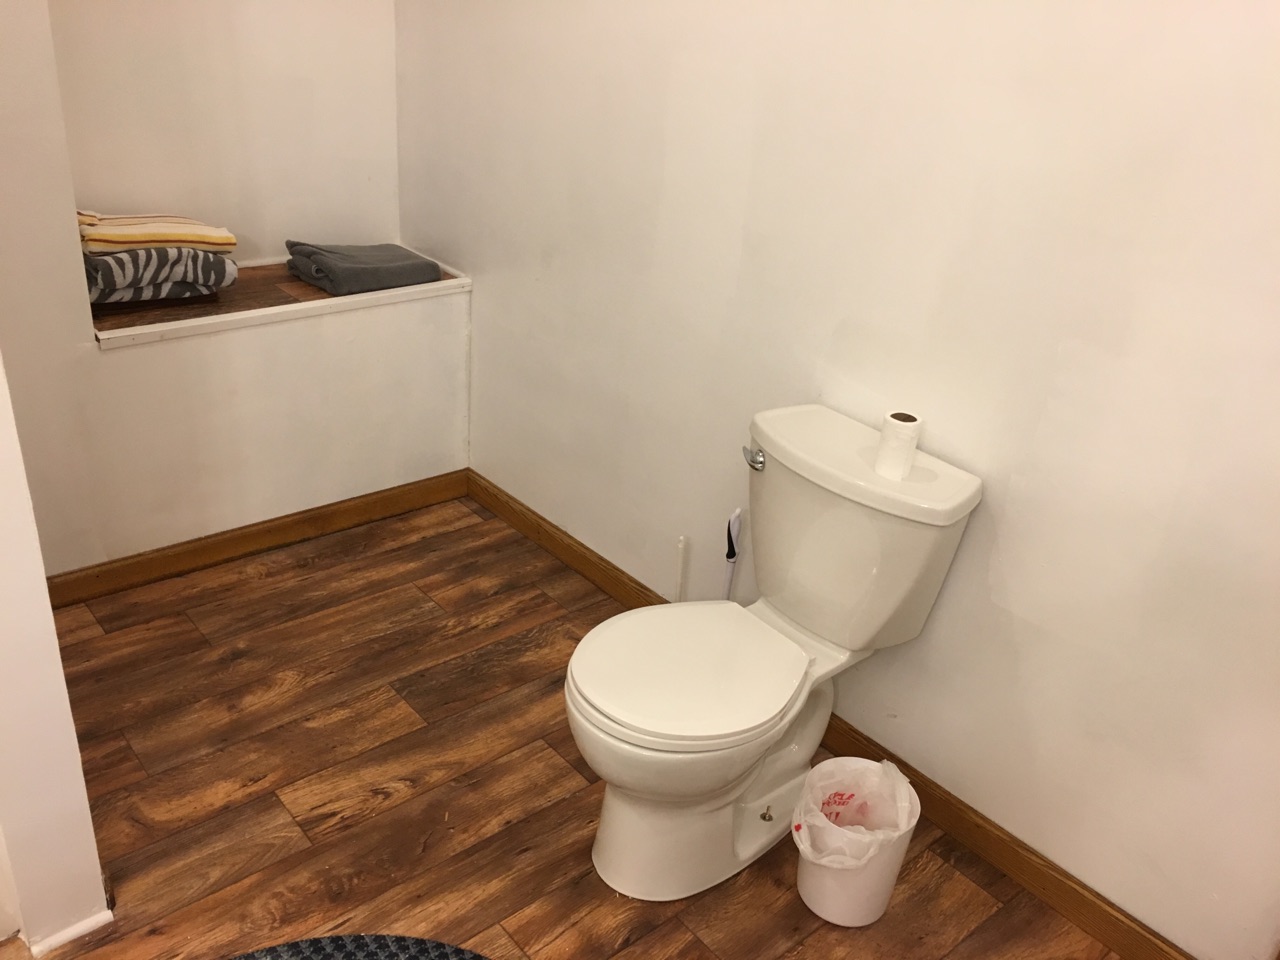 SerD-C toilet.jpg